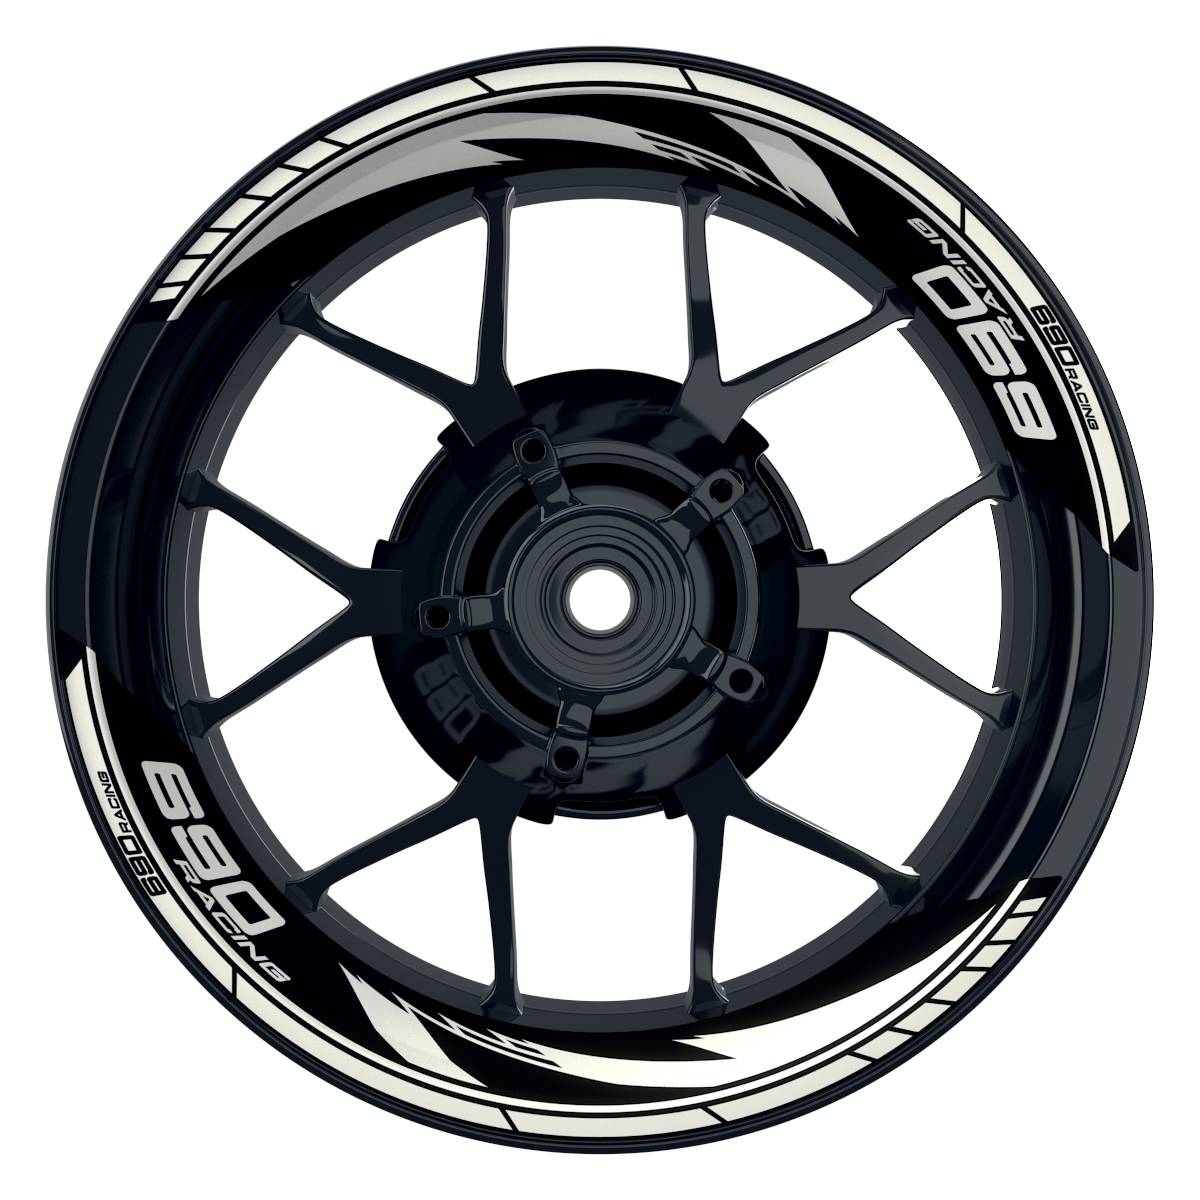 KTM Racing 690 Razor schwarz weiss Frontansicht